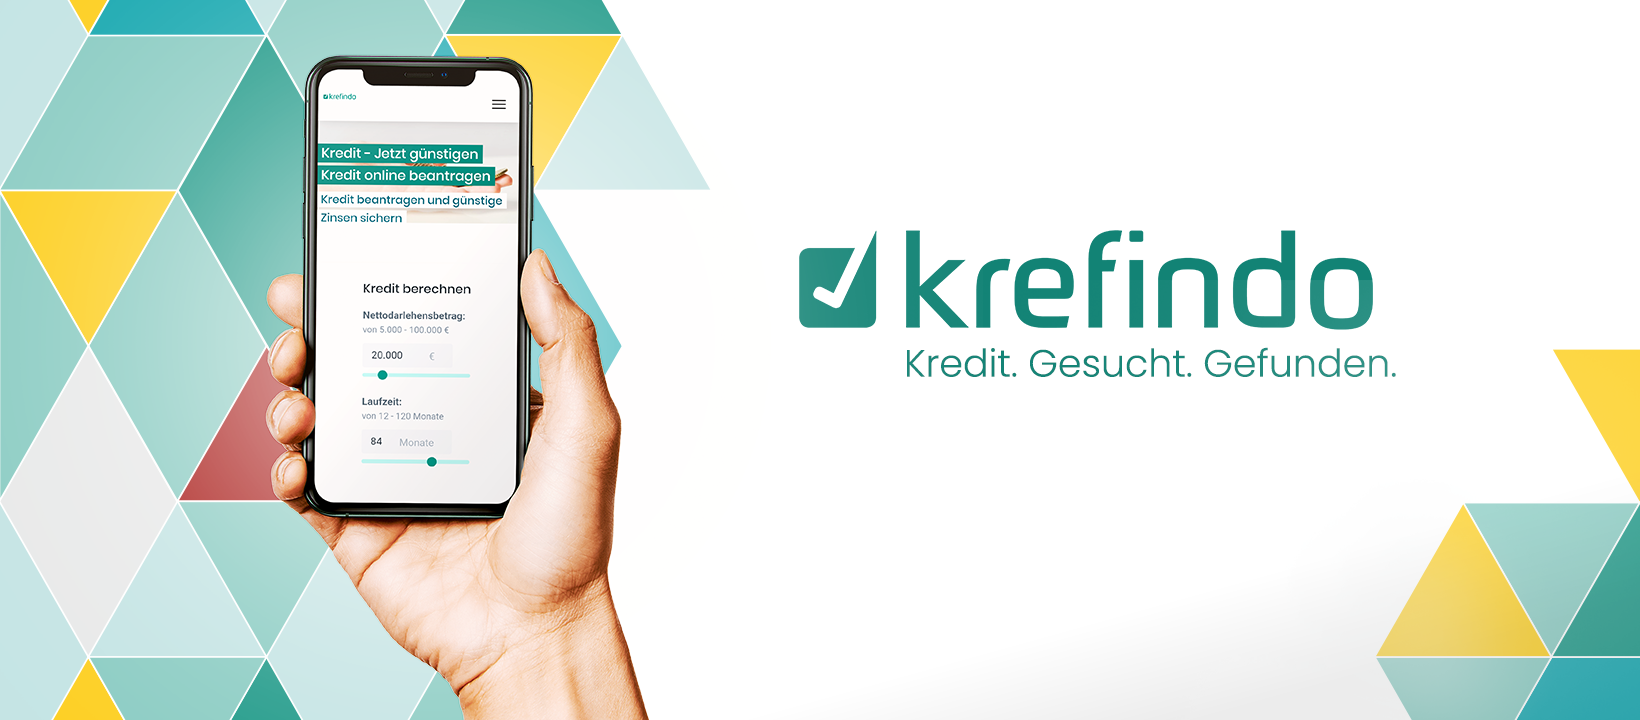 krefindo / startup from Dresden / Background